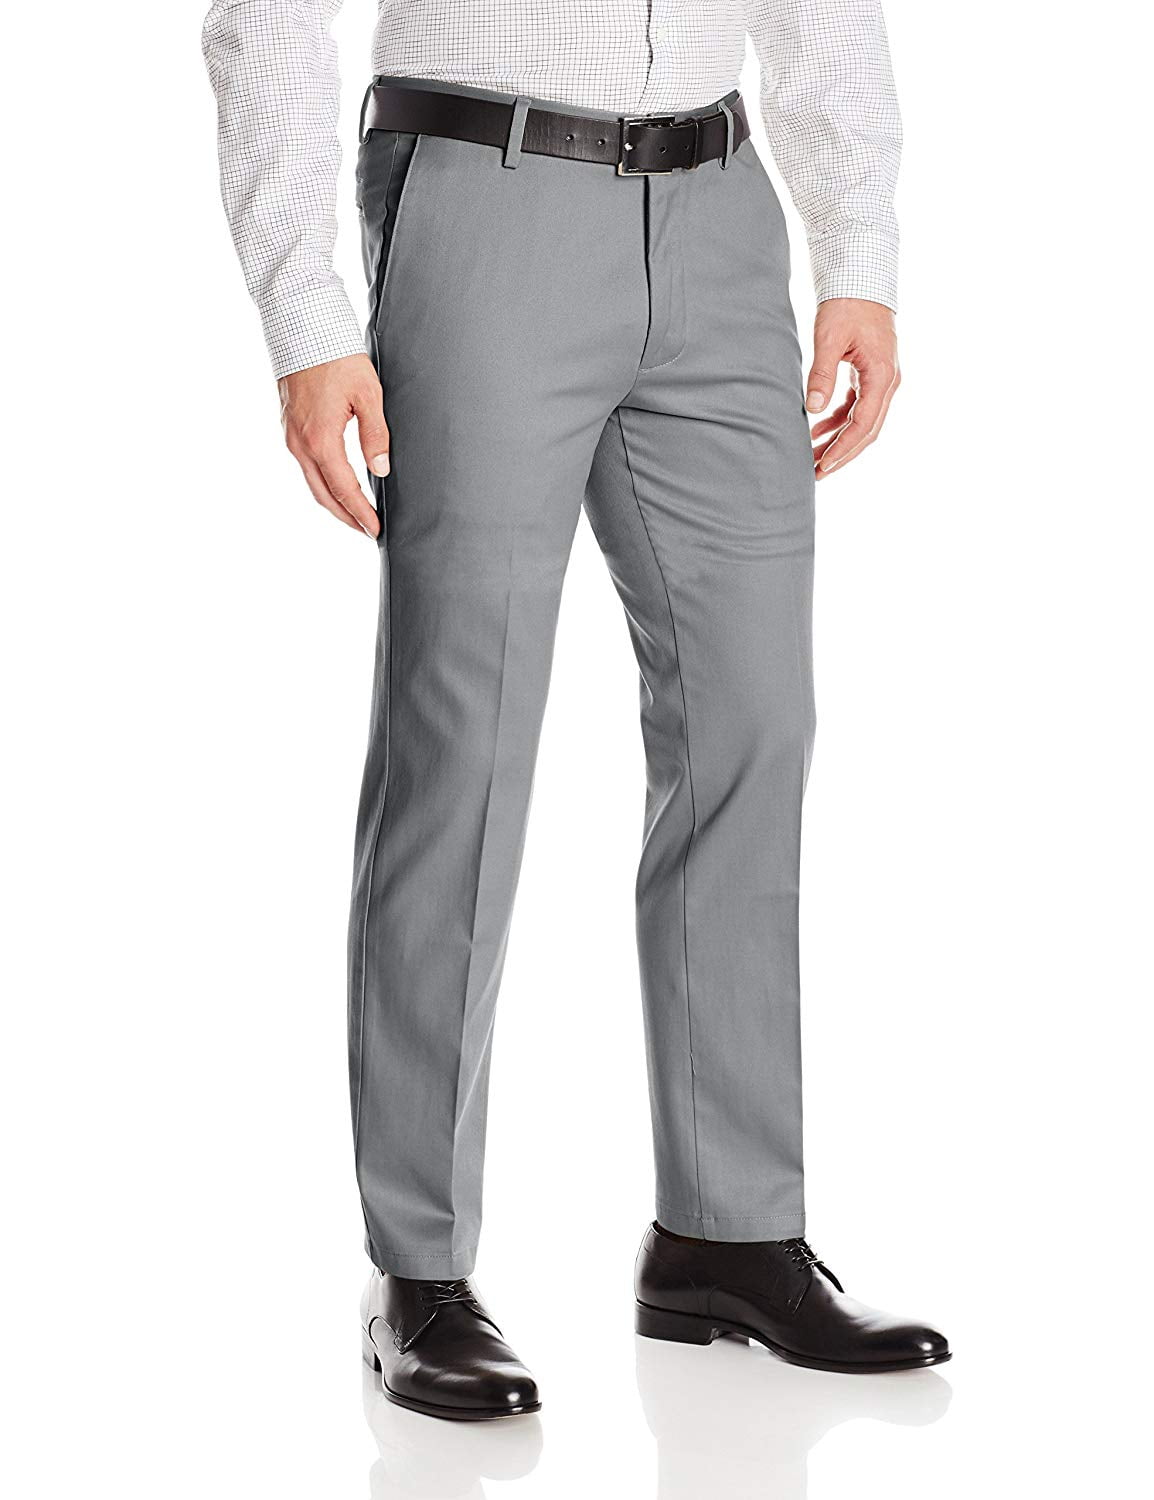 Boltini Italy Men's Flat Front Slim Fit Slacks Trousers Dress Pants (Light  Gray, 38x30) 